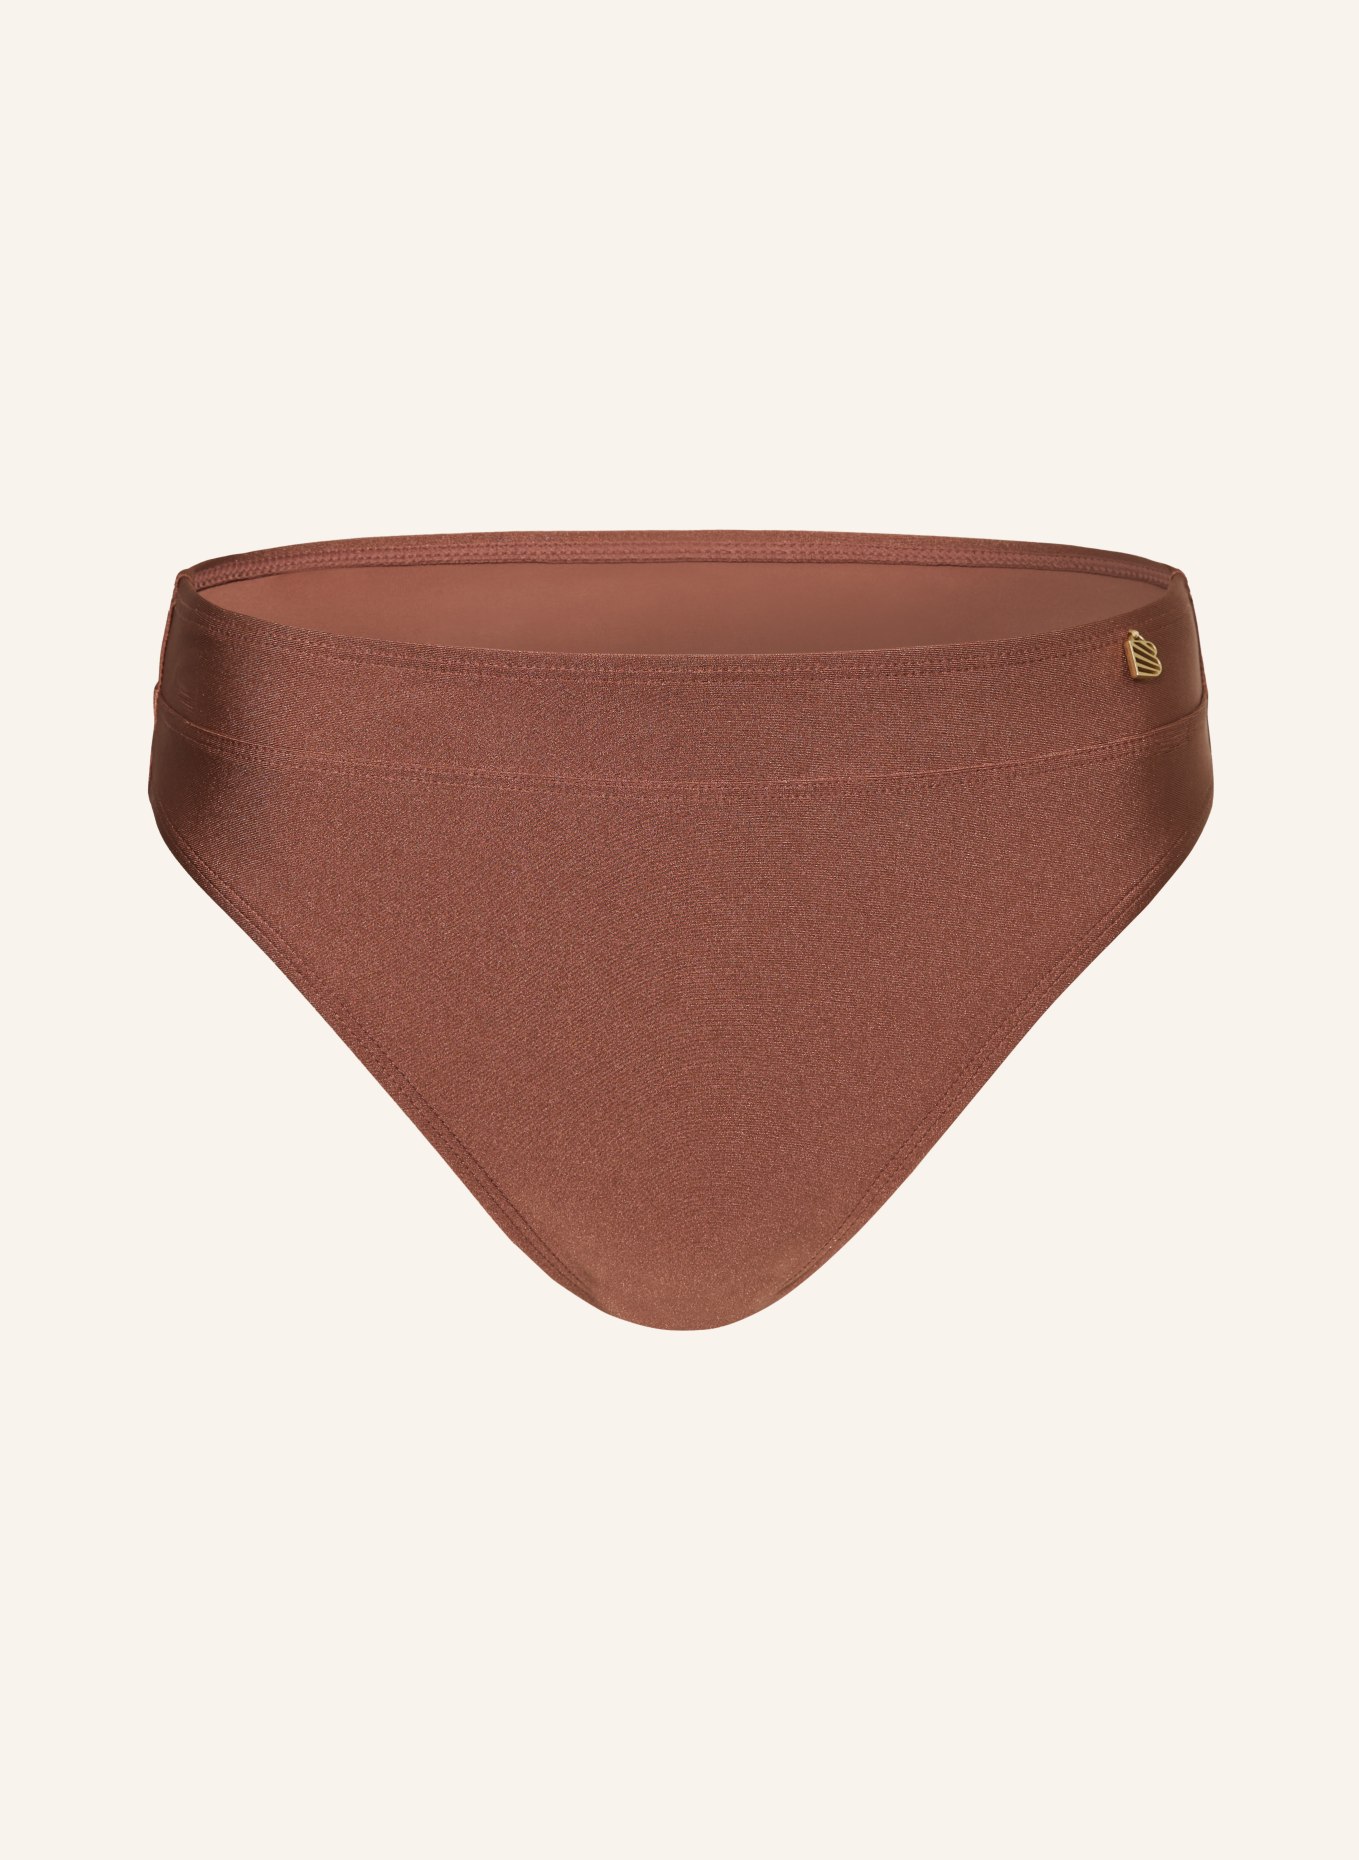 BEACHLIFE Panty bikini bottoms CHOCOLATE SHINE, Color: BROWN (Image 1)